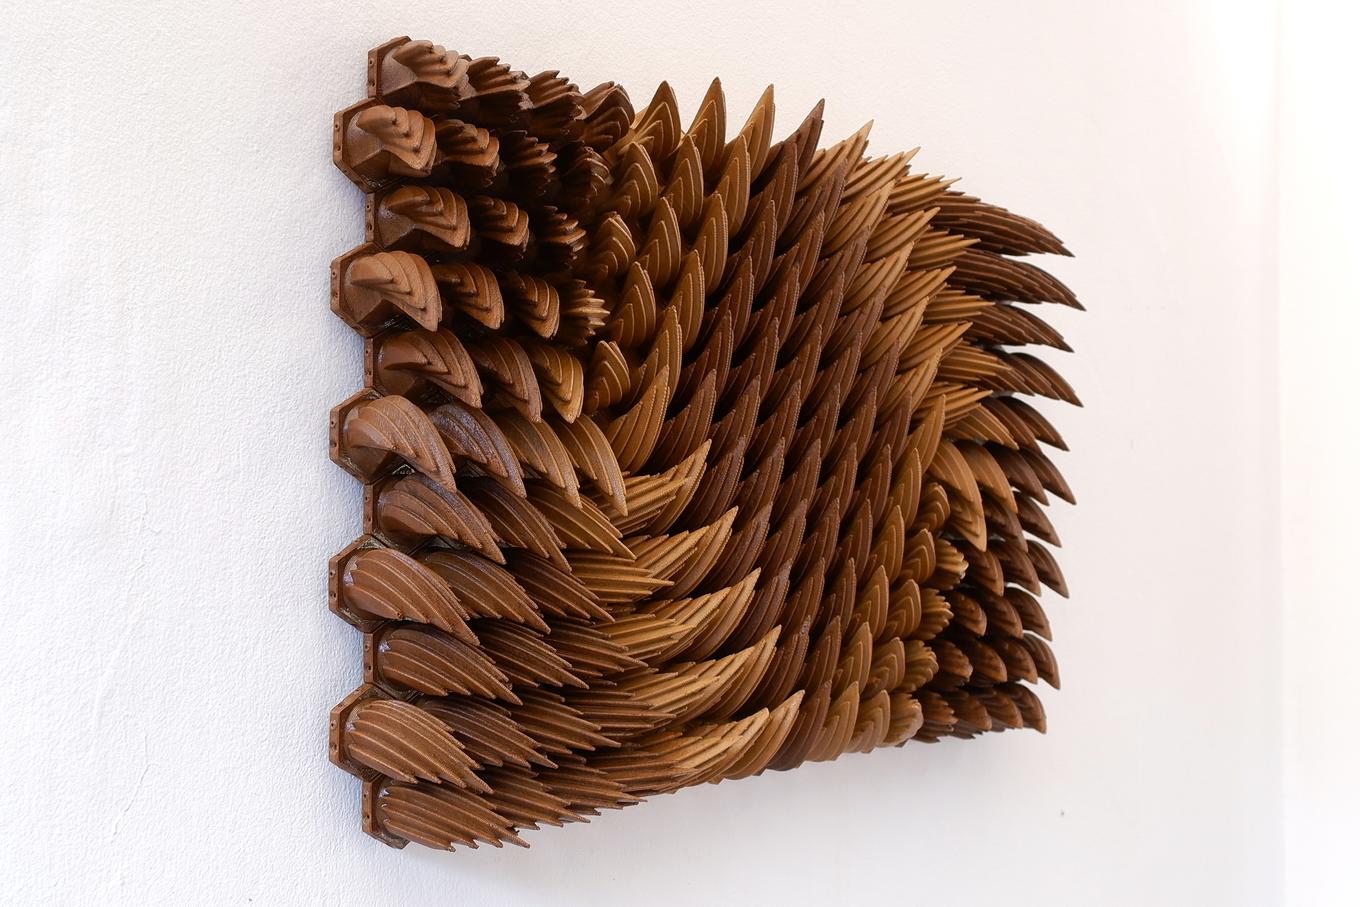 Turbulence | Herschel Shapiro | Abstract Wooden Wall Sculpture